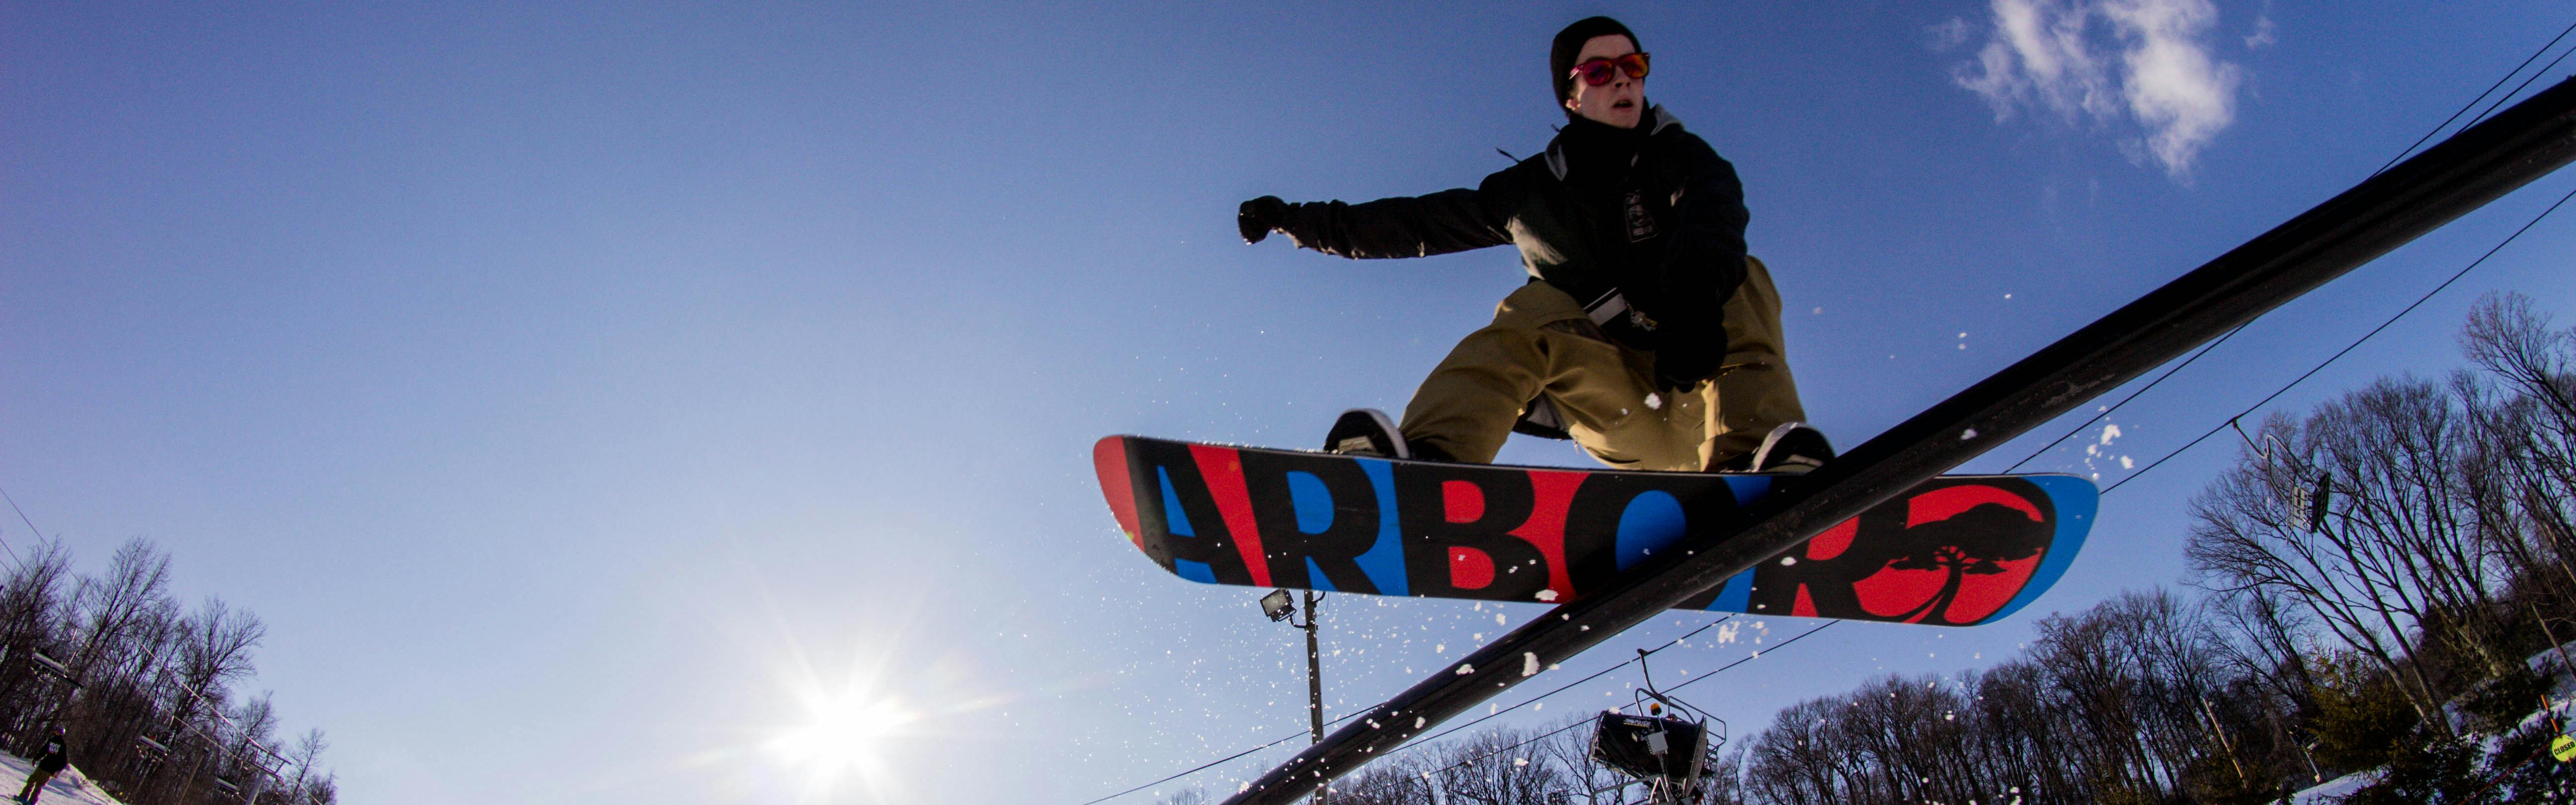 A snowboarder slides down a rail